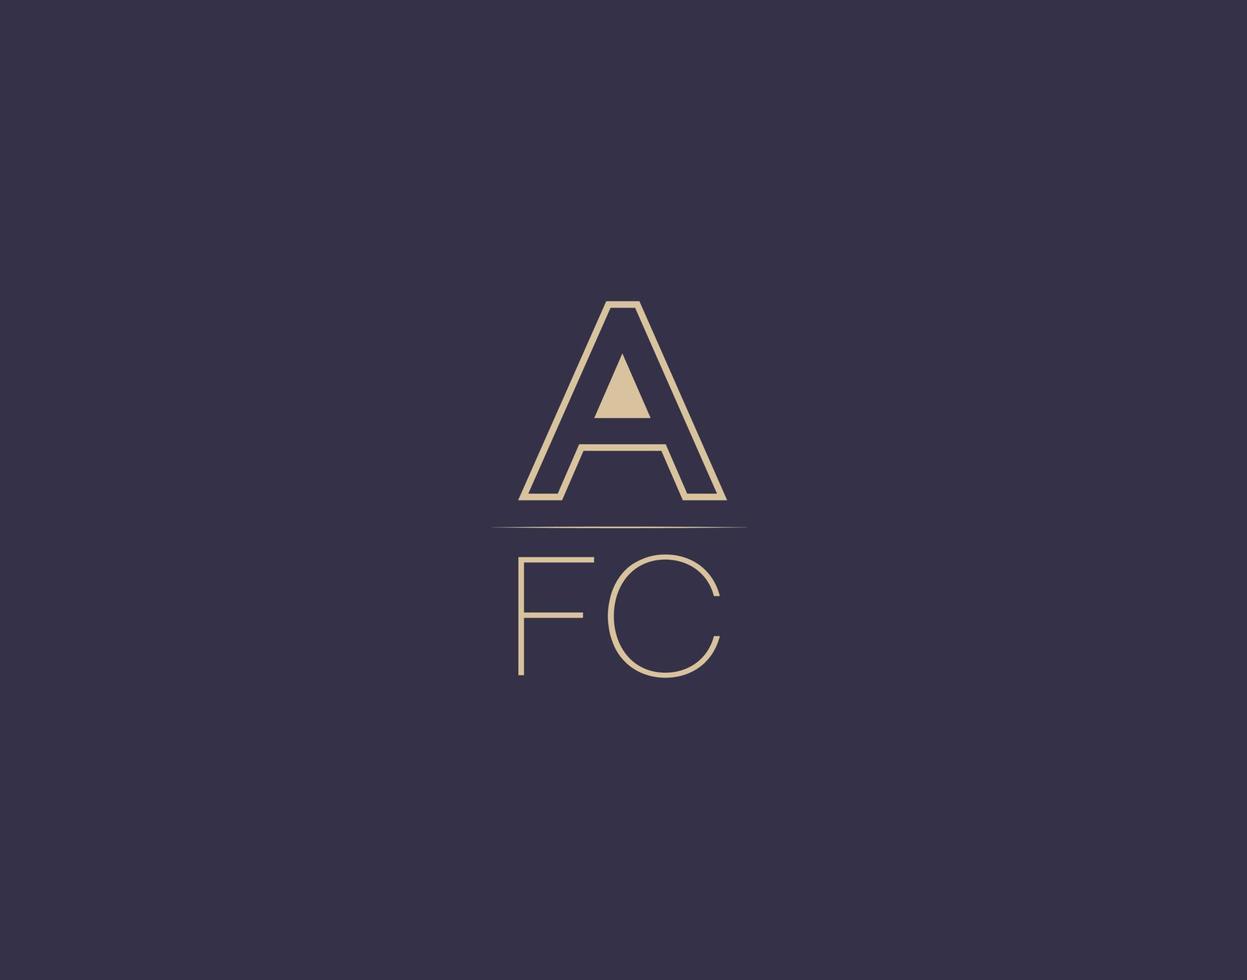 afc carta logo diseño moderno minimalista vector imágenes